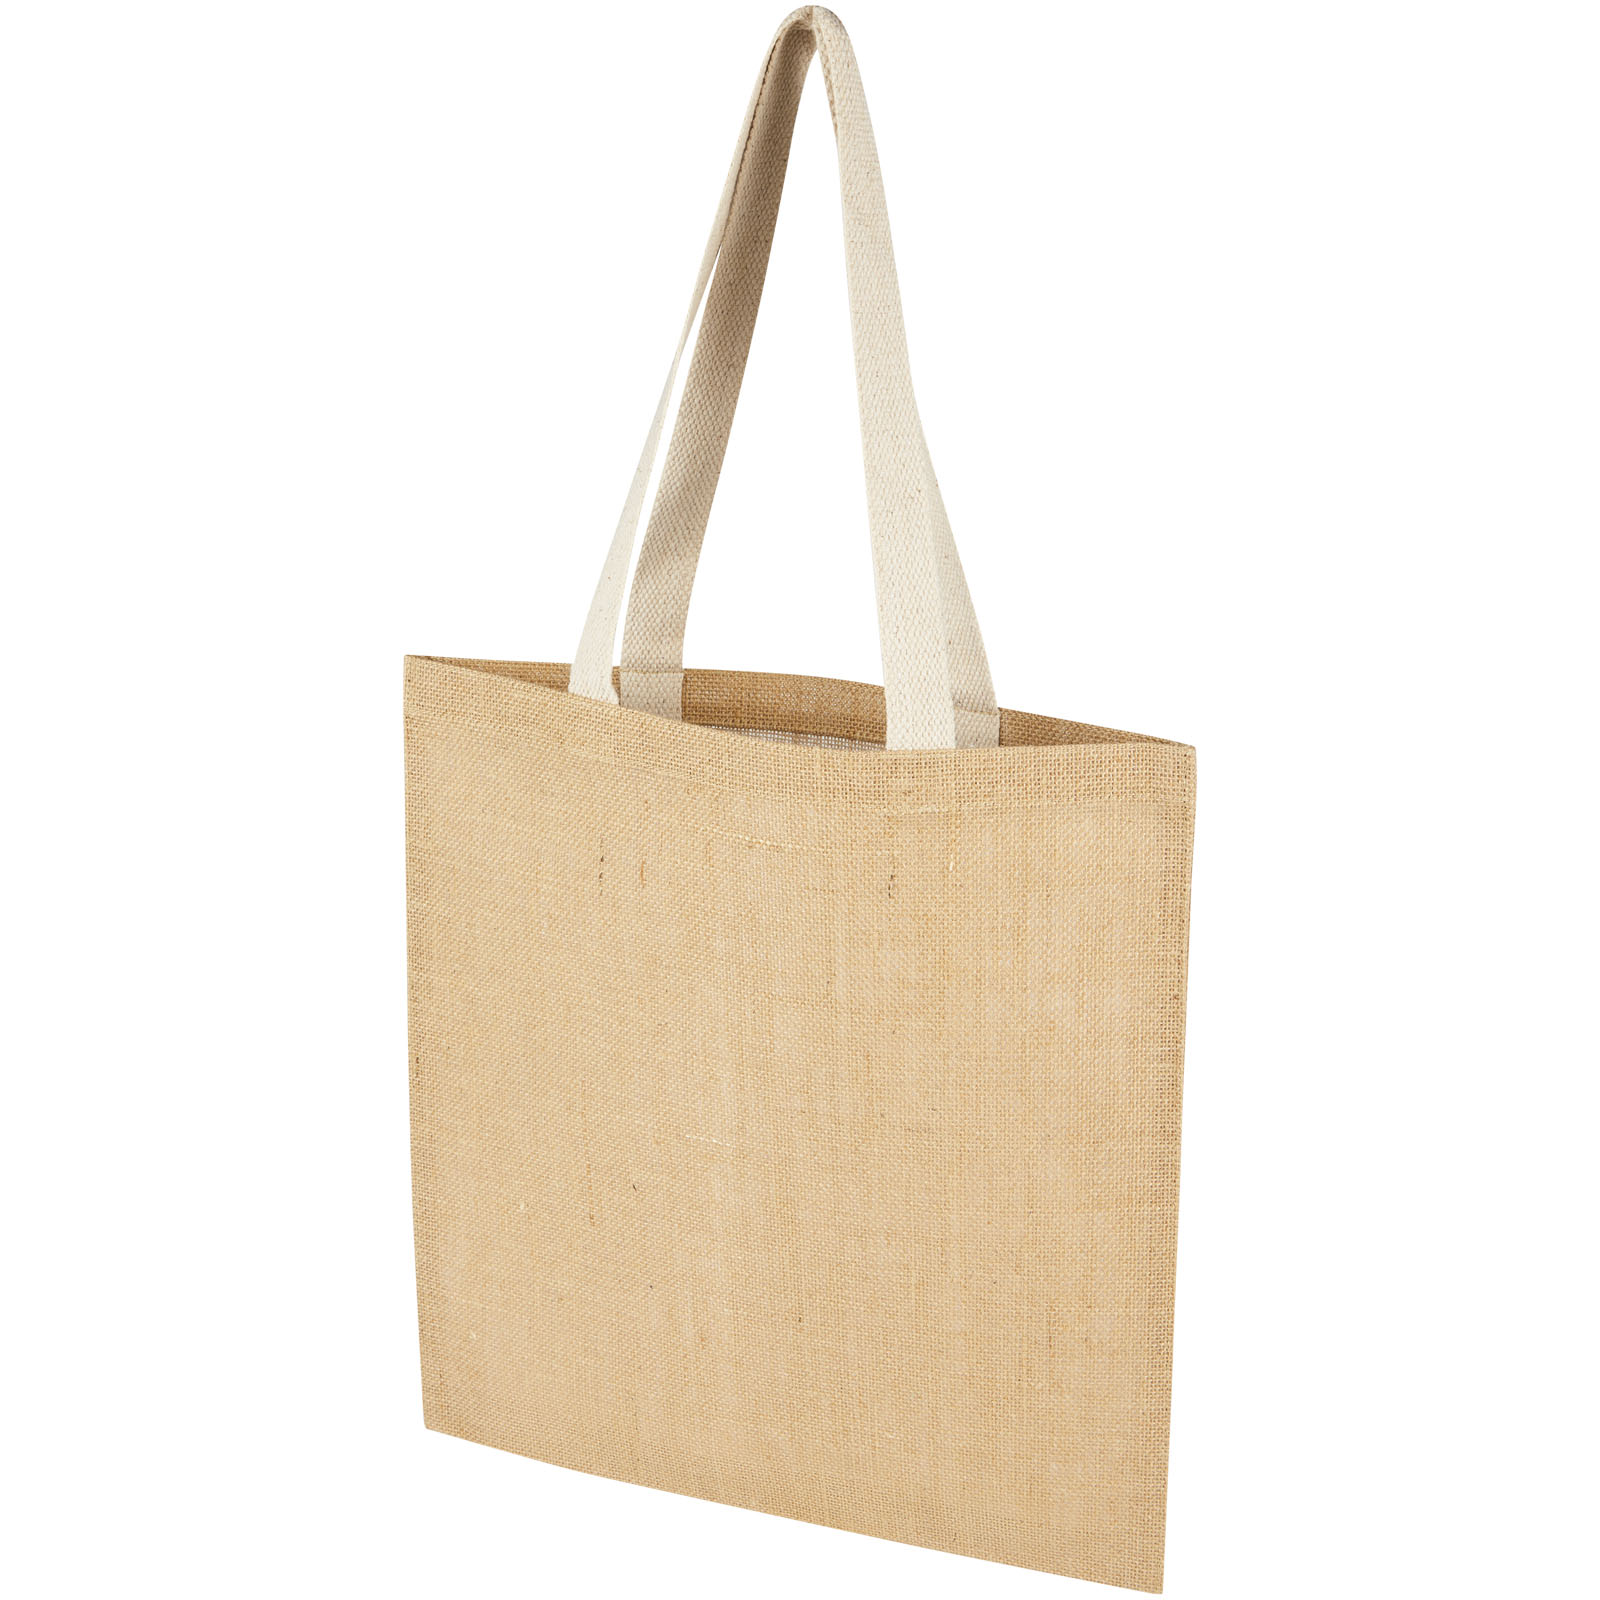 Jute shopping bag FARO - natural / white